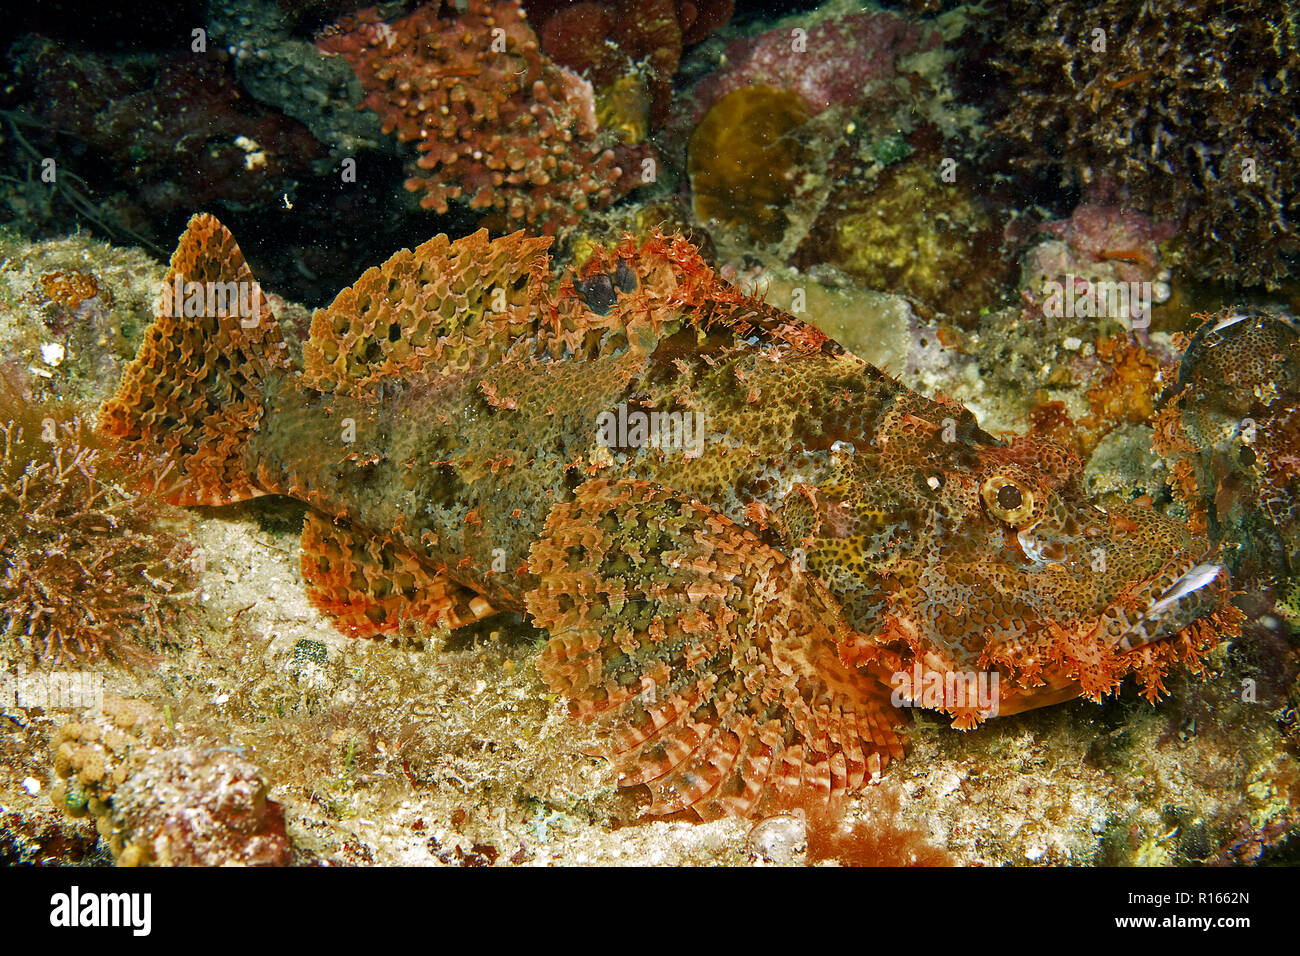 Tassled scorpionfish (Scorpaenopsis oxycephala), portant sur un corail, l'île de Malapascua, Cebu, Philippines Banque D'Images